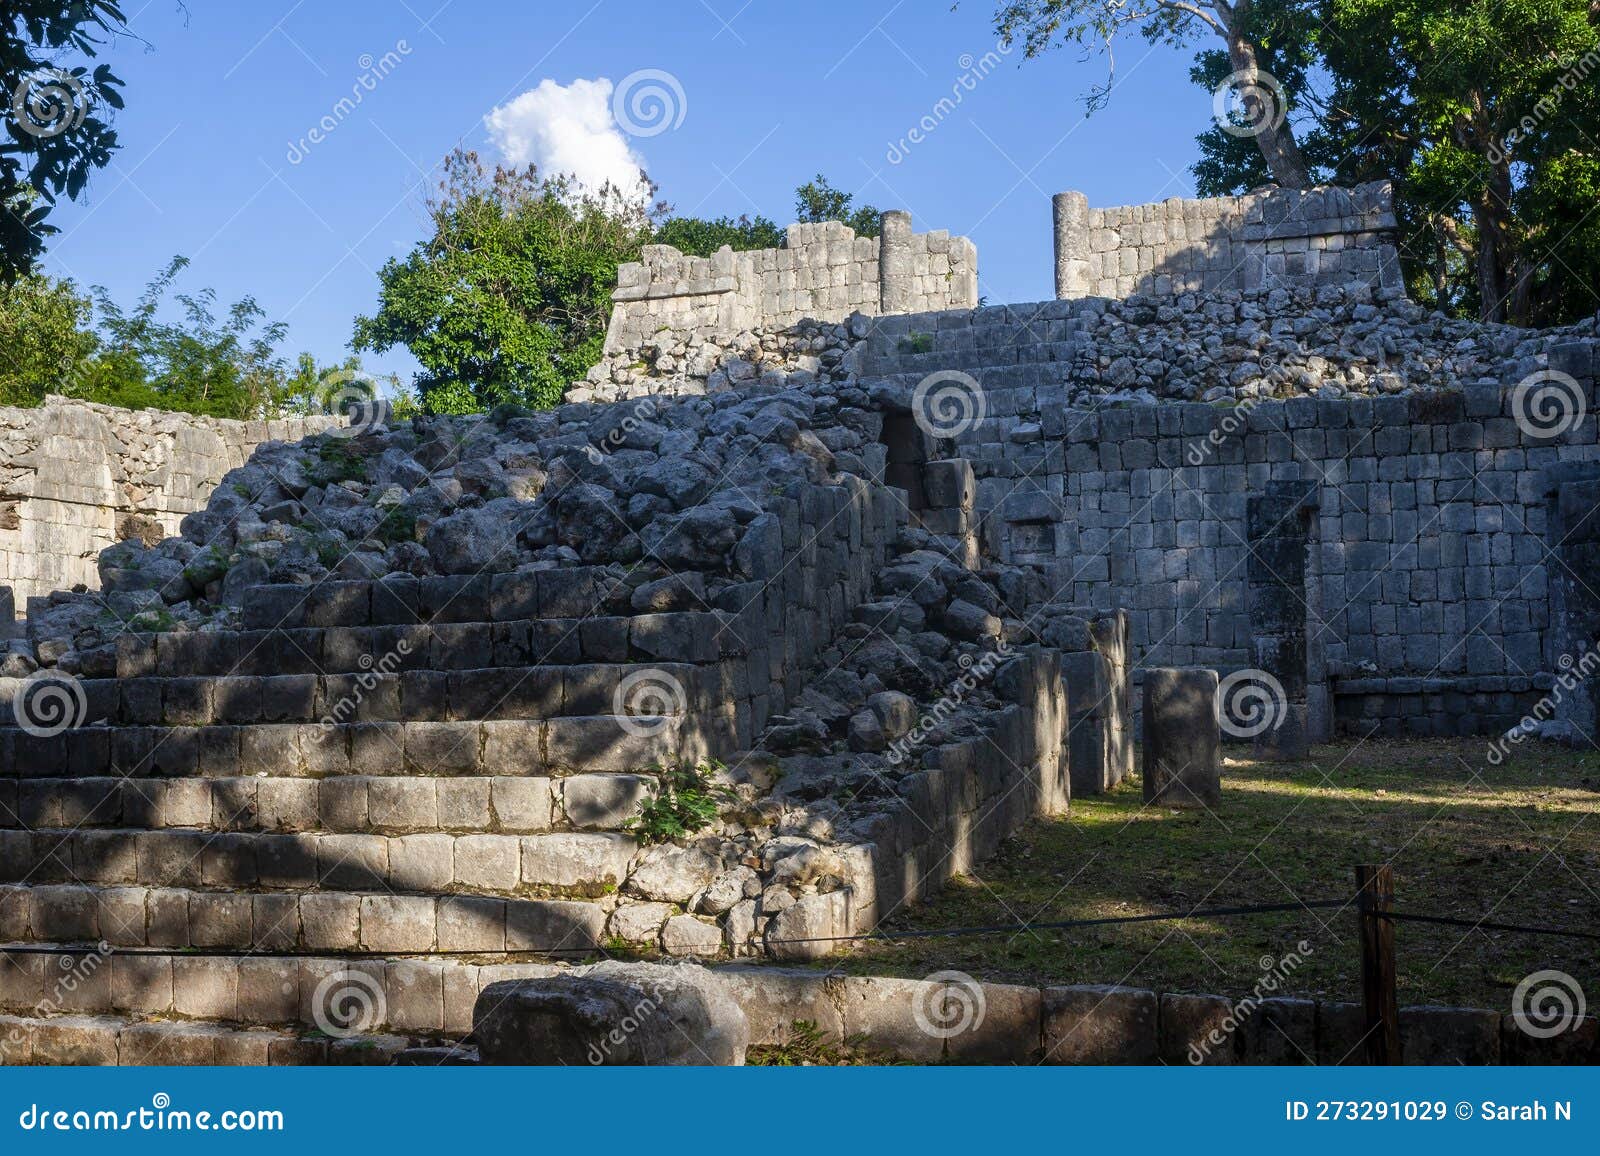 chichen itza ruins, observatorio de caracol, tinum, yucatan, mexico